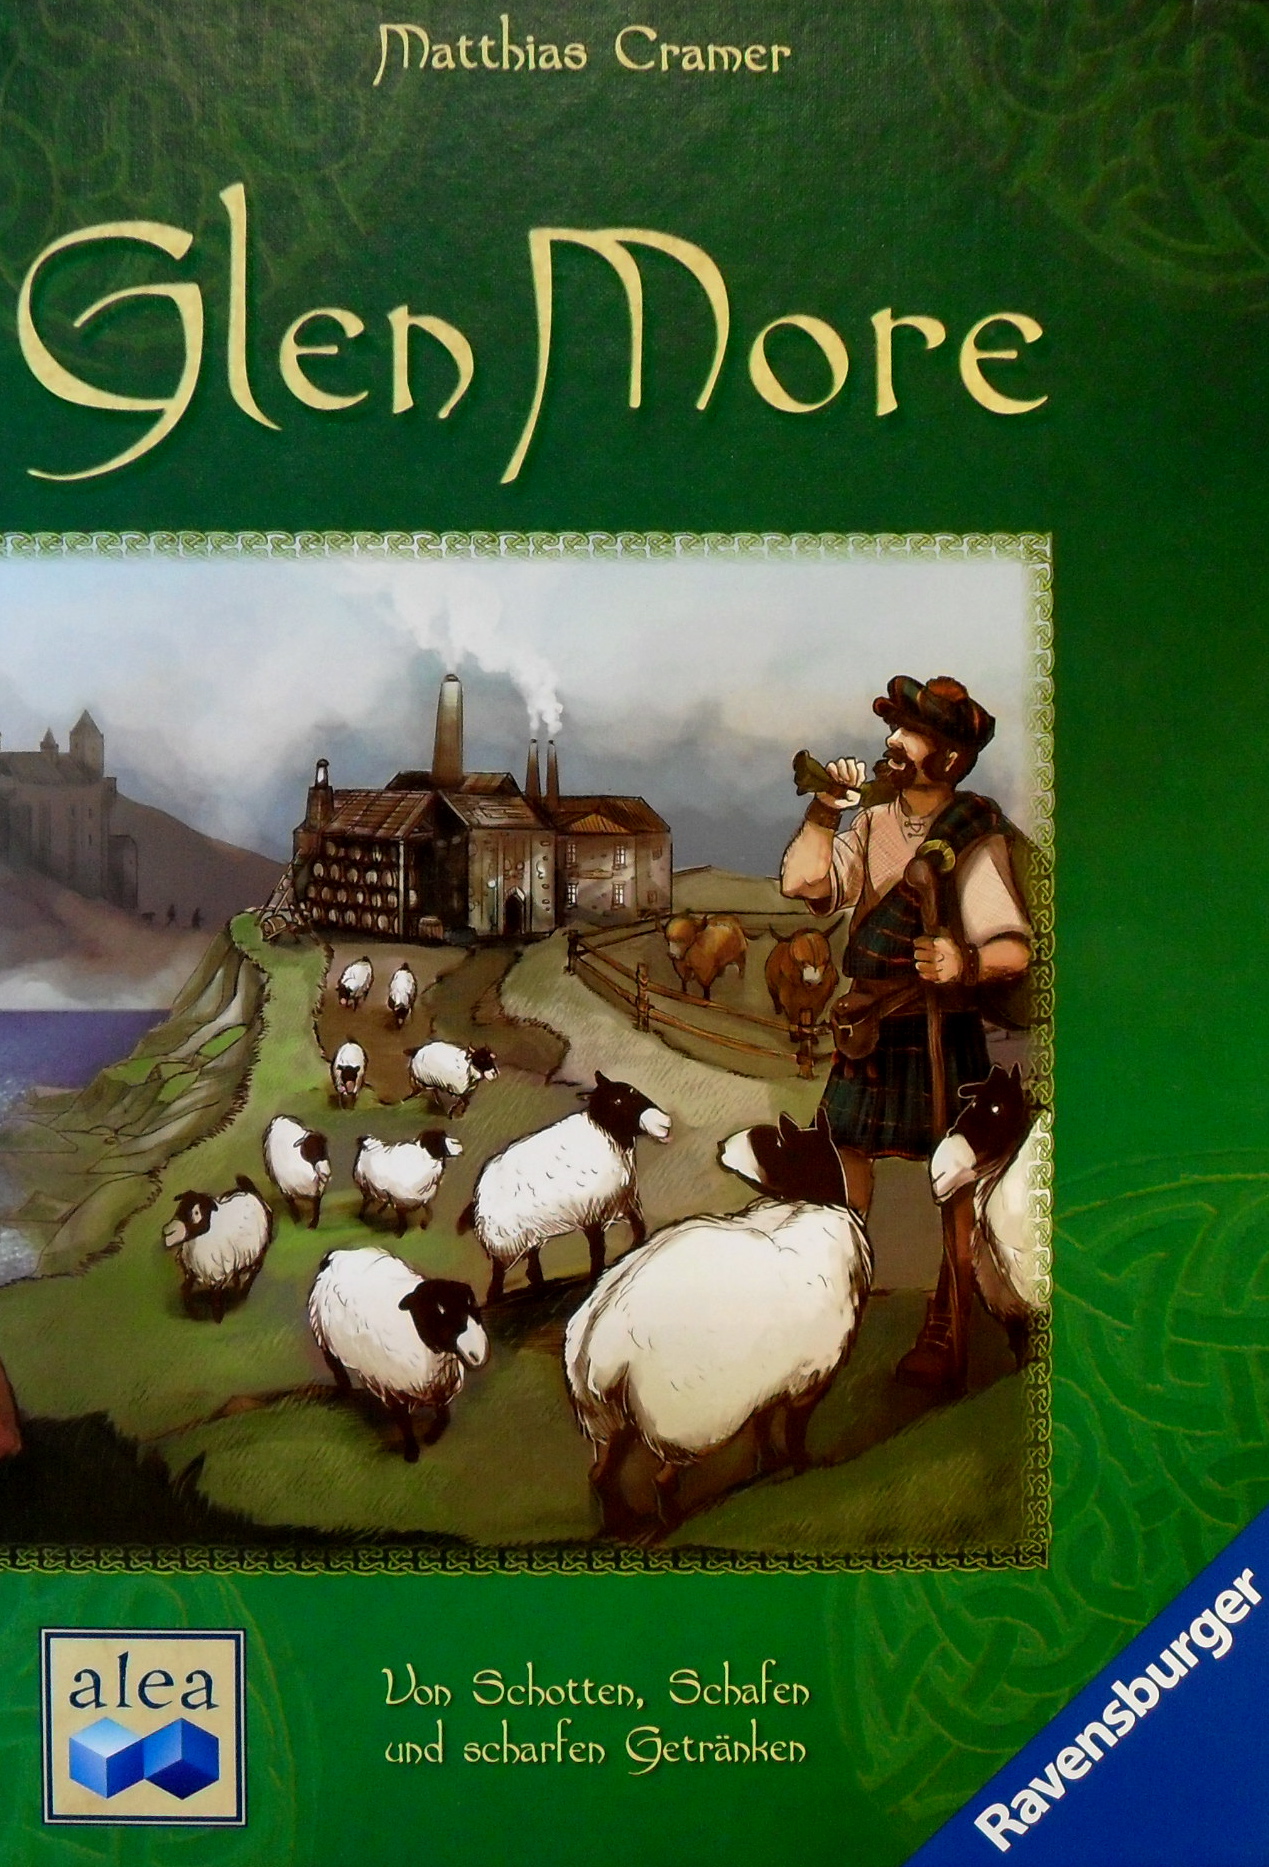 AM06: Glen More (Von Schotten, Schafen und scharfen Getränken)